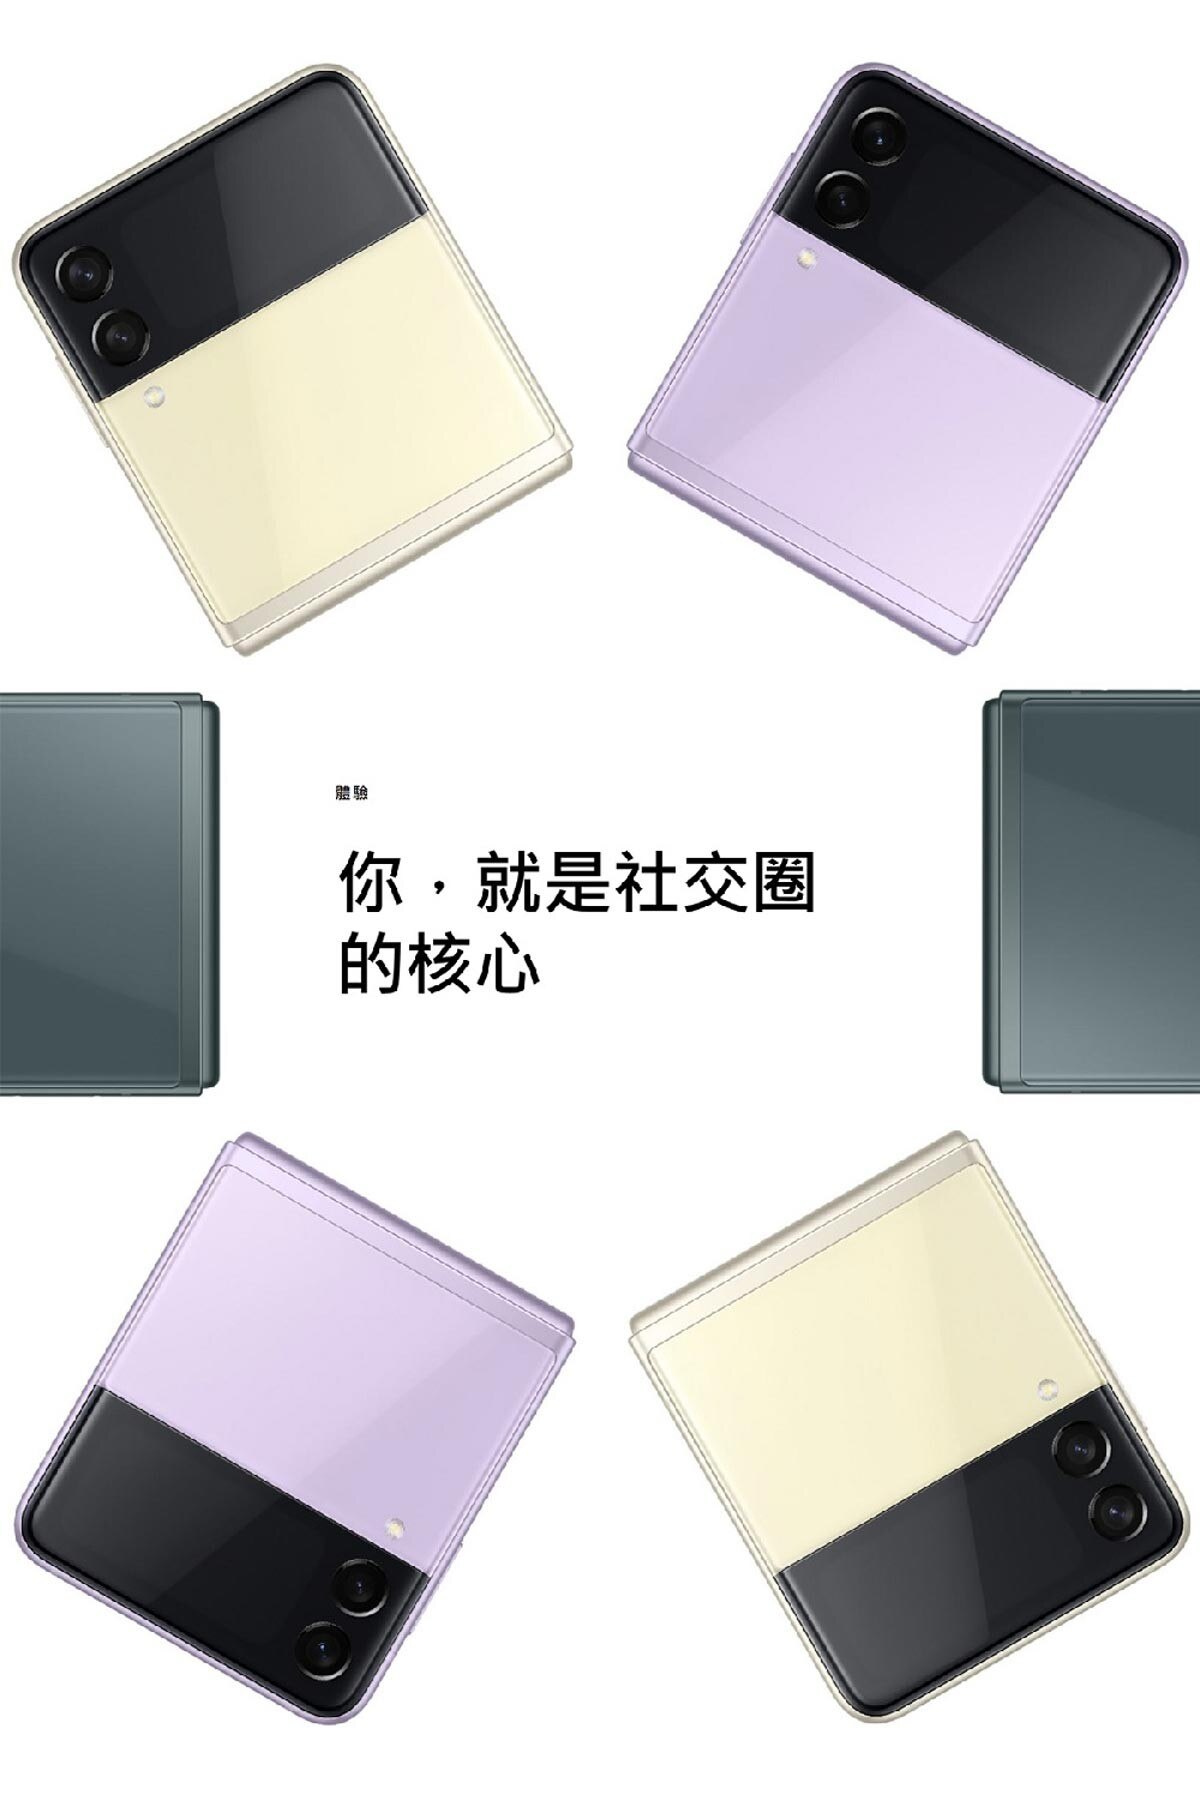 SAMSUNG Z-FOLD 3 5G 雙主鏡折疊式智慧型手機 幻影黑，內頁螢幕採用三星超薄可摺式玻璃製成，手機增添面板層和保護膜，讓耐用性提升 80%，摺疊次數可達 200,000 次。